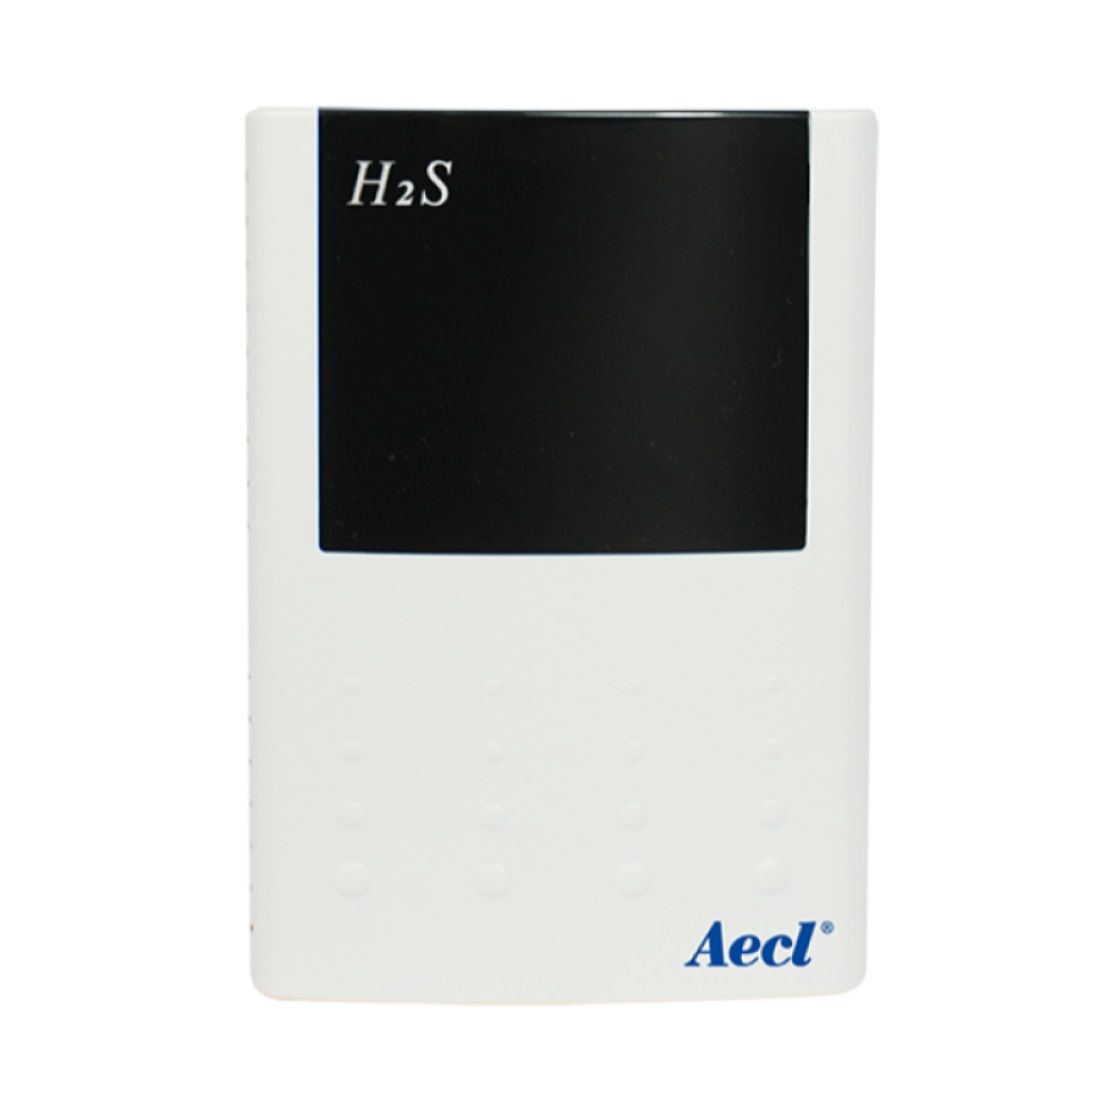 Solusi penginderaan nirkabel untuk pemantauan lingkungan H2S.